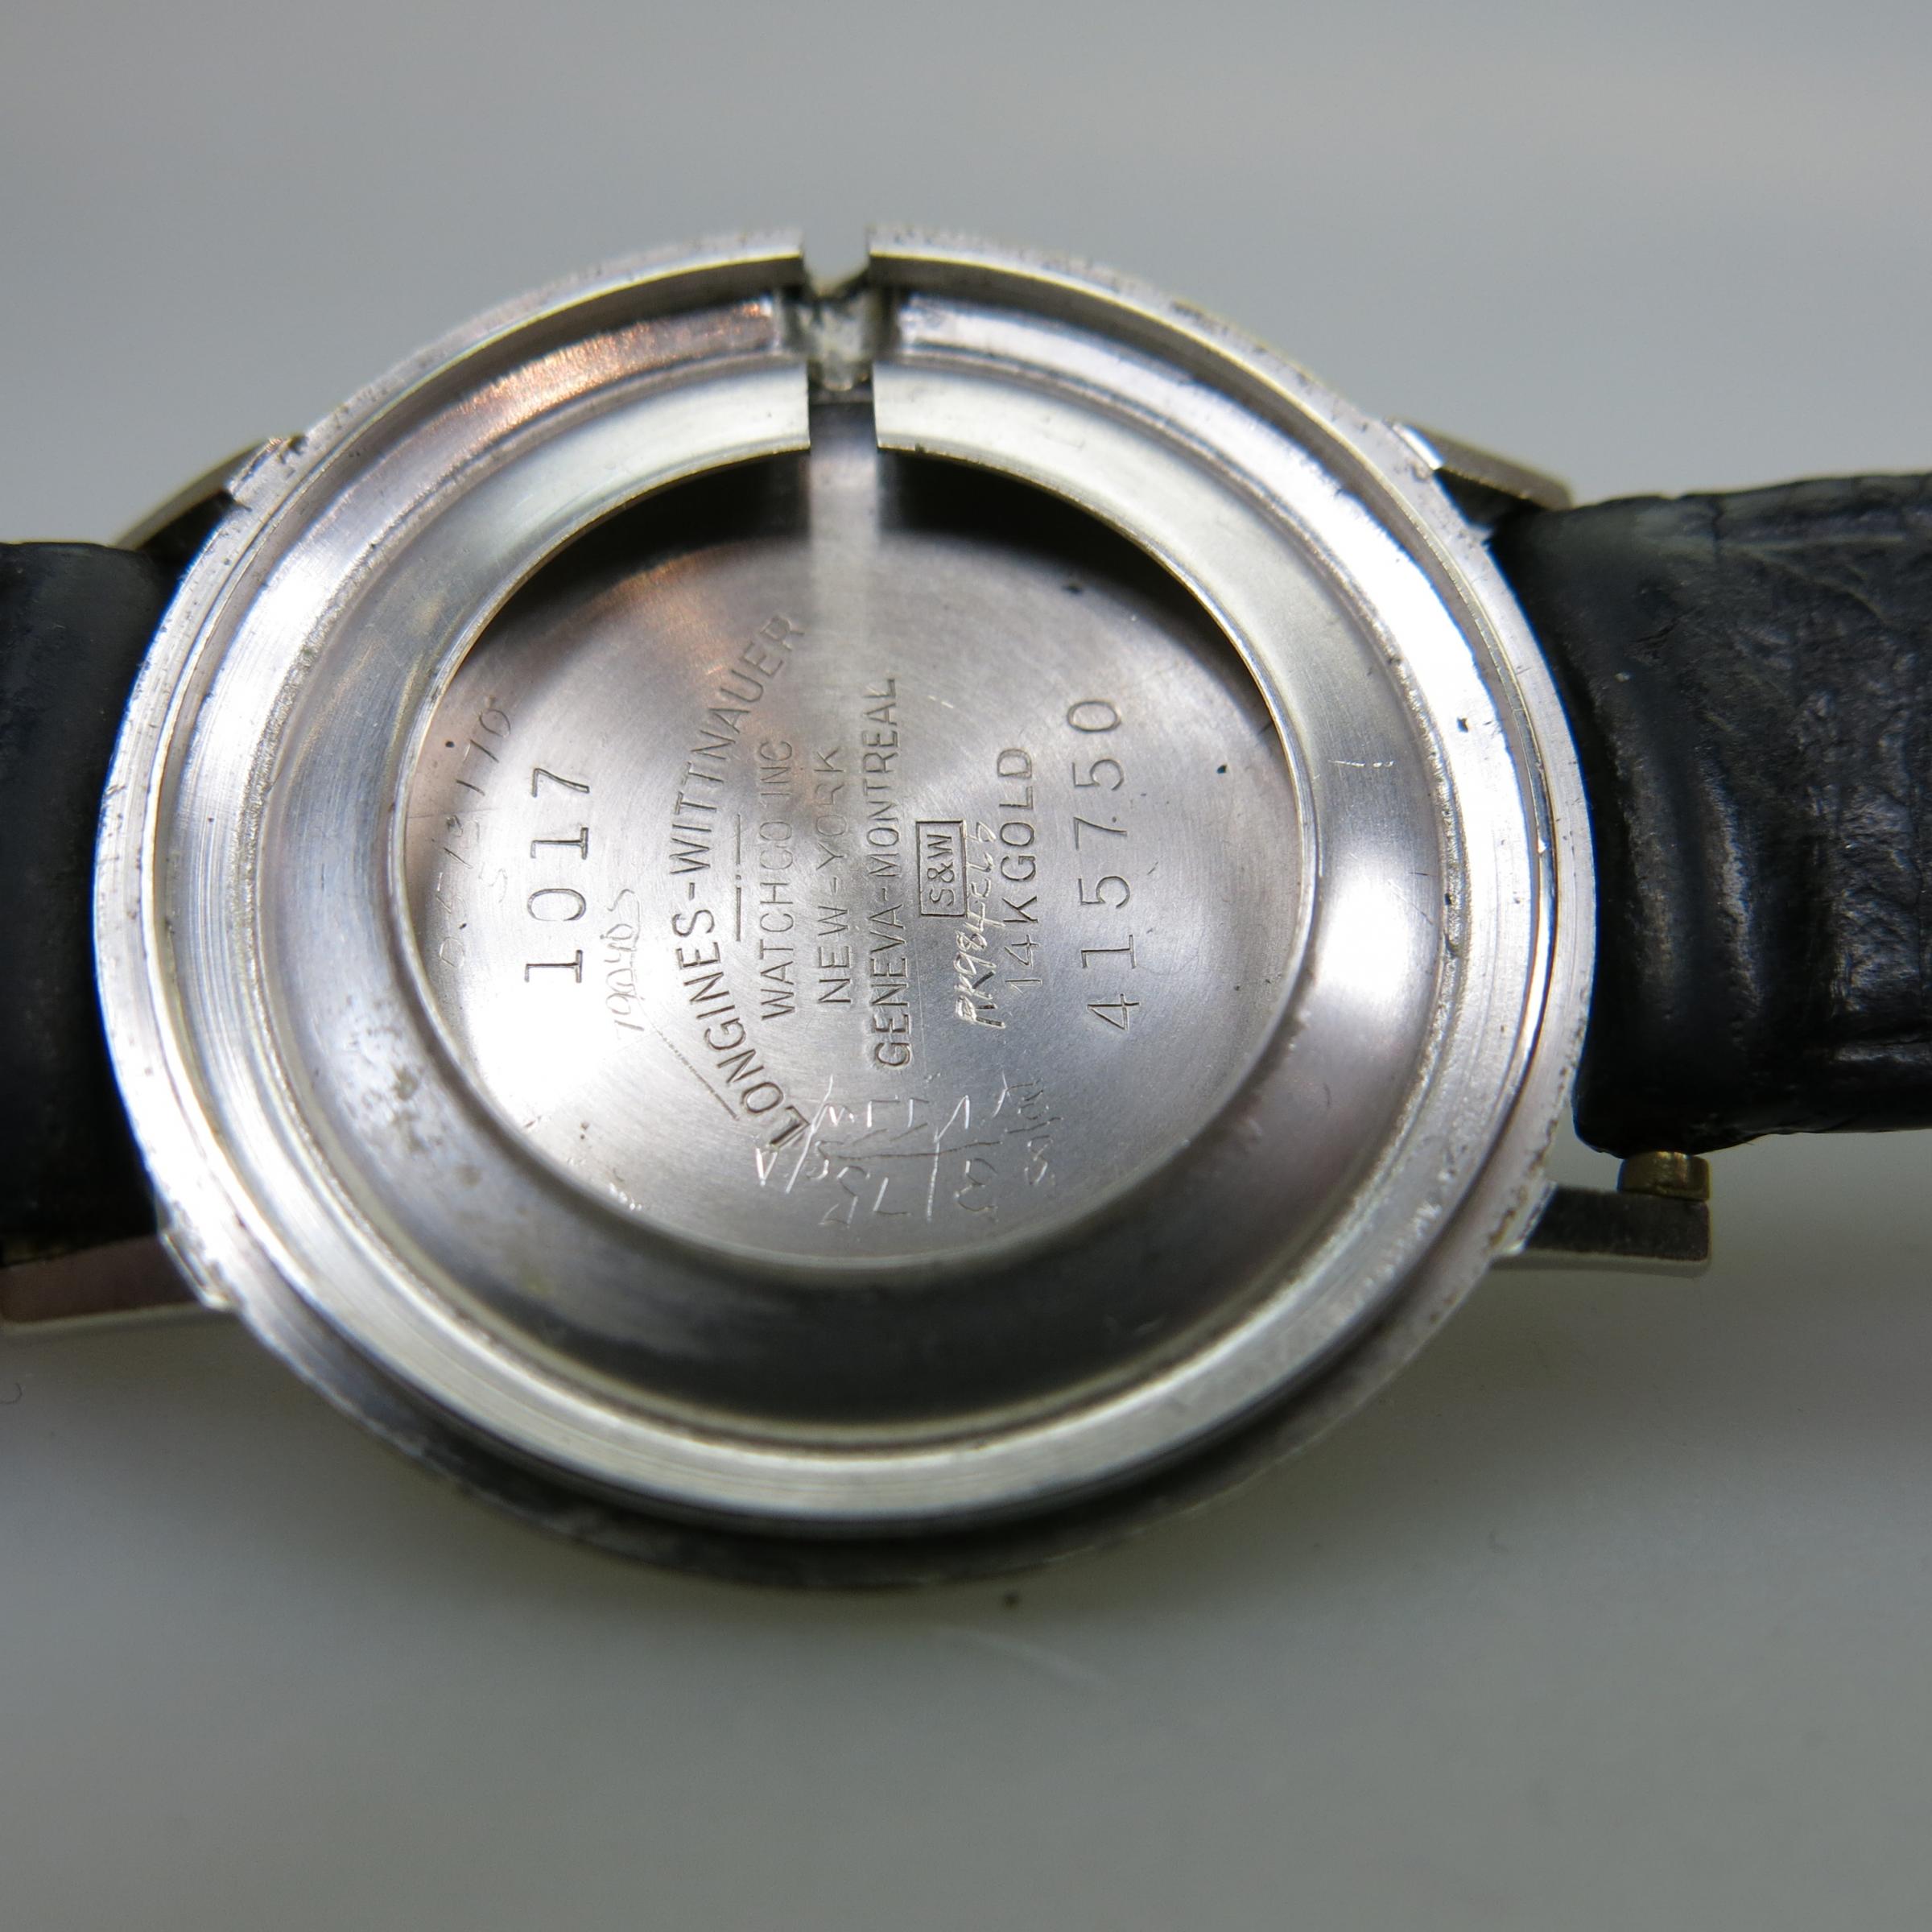 Longines Wristwatch